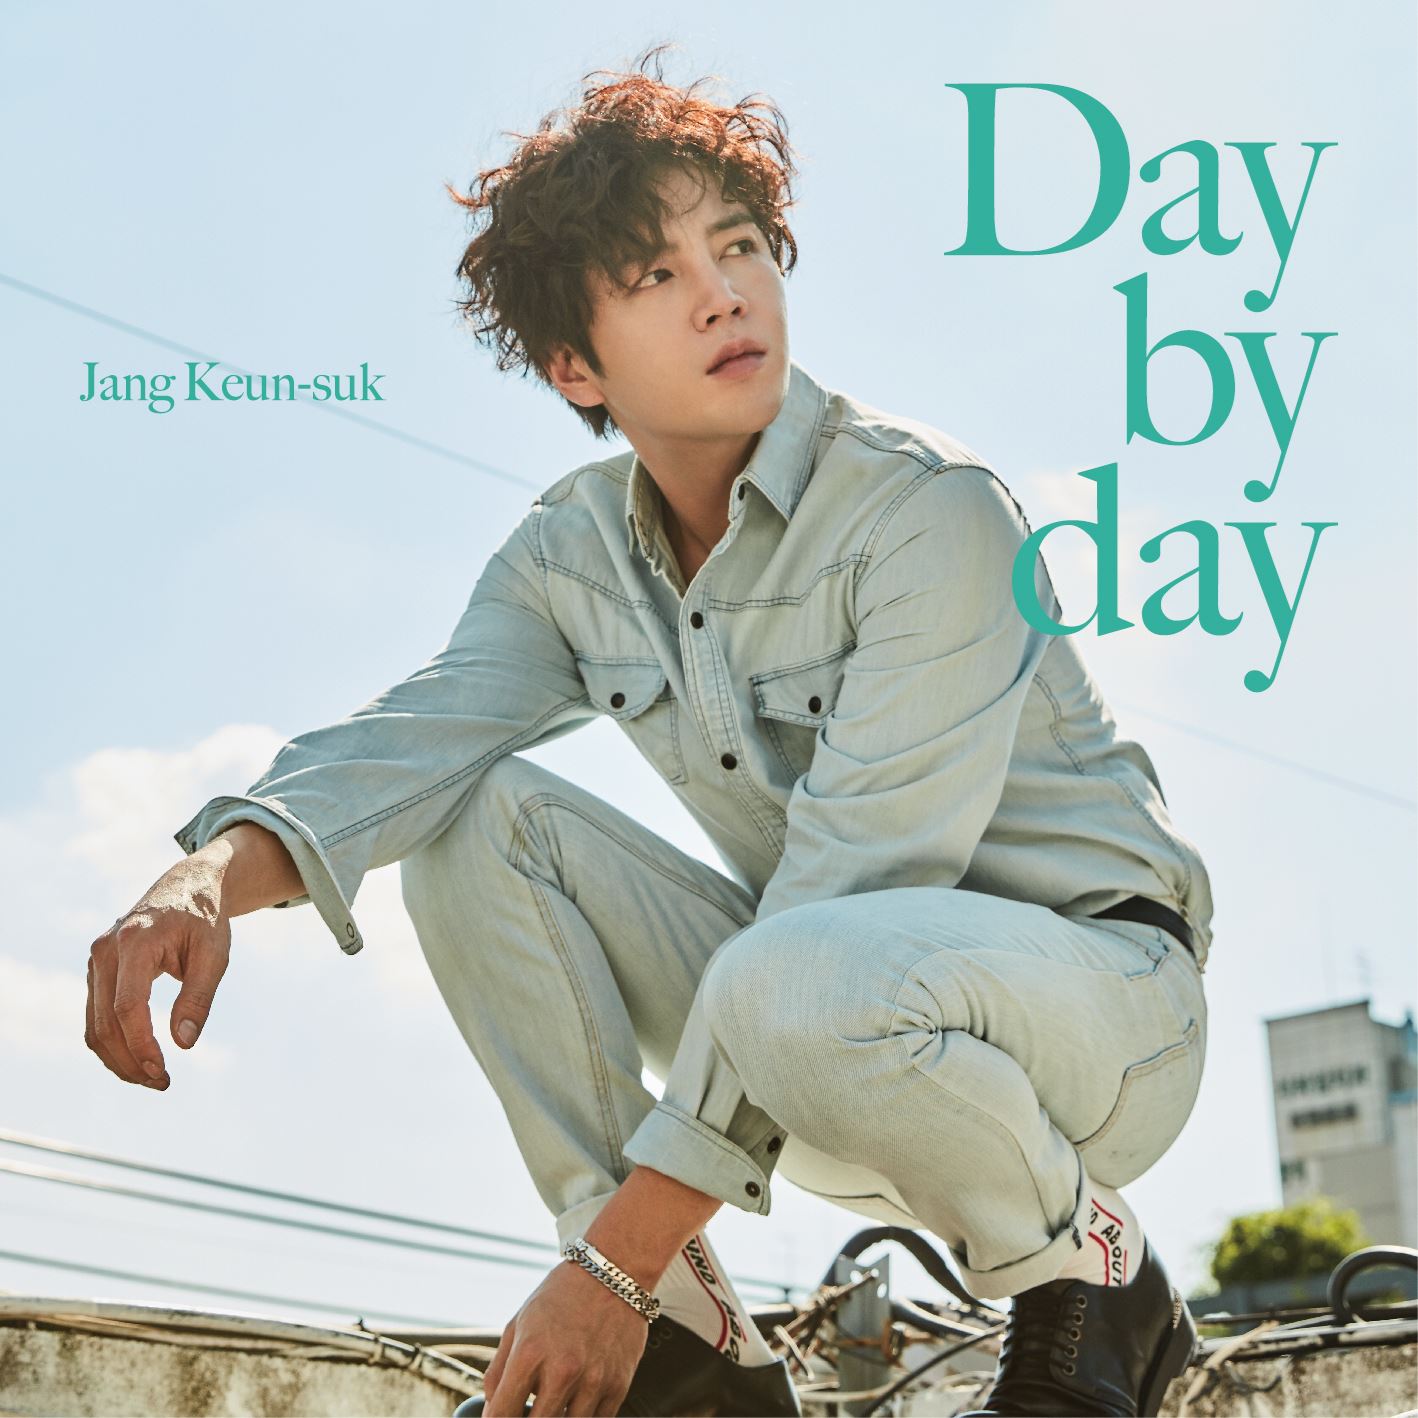 チャン・グンソク『Day by day』初回限定盤Cジャケット